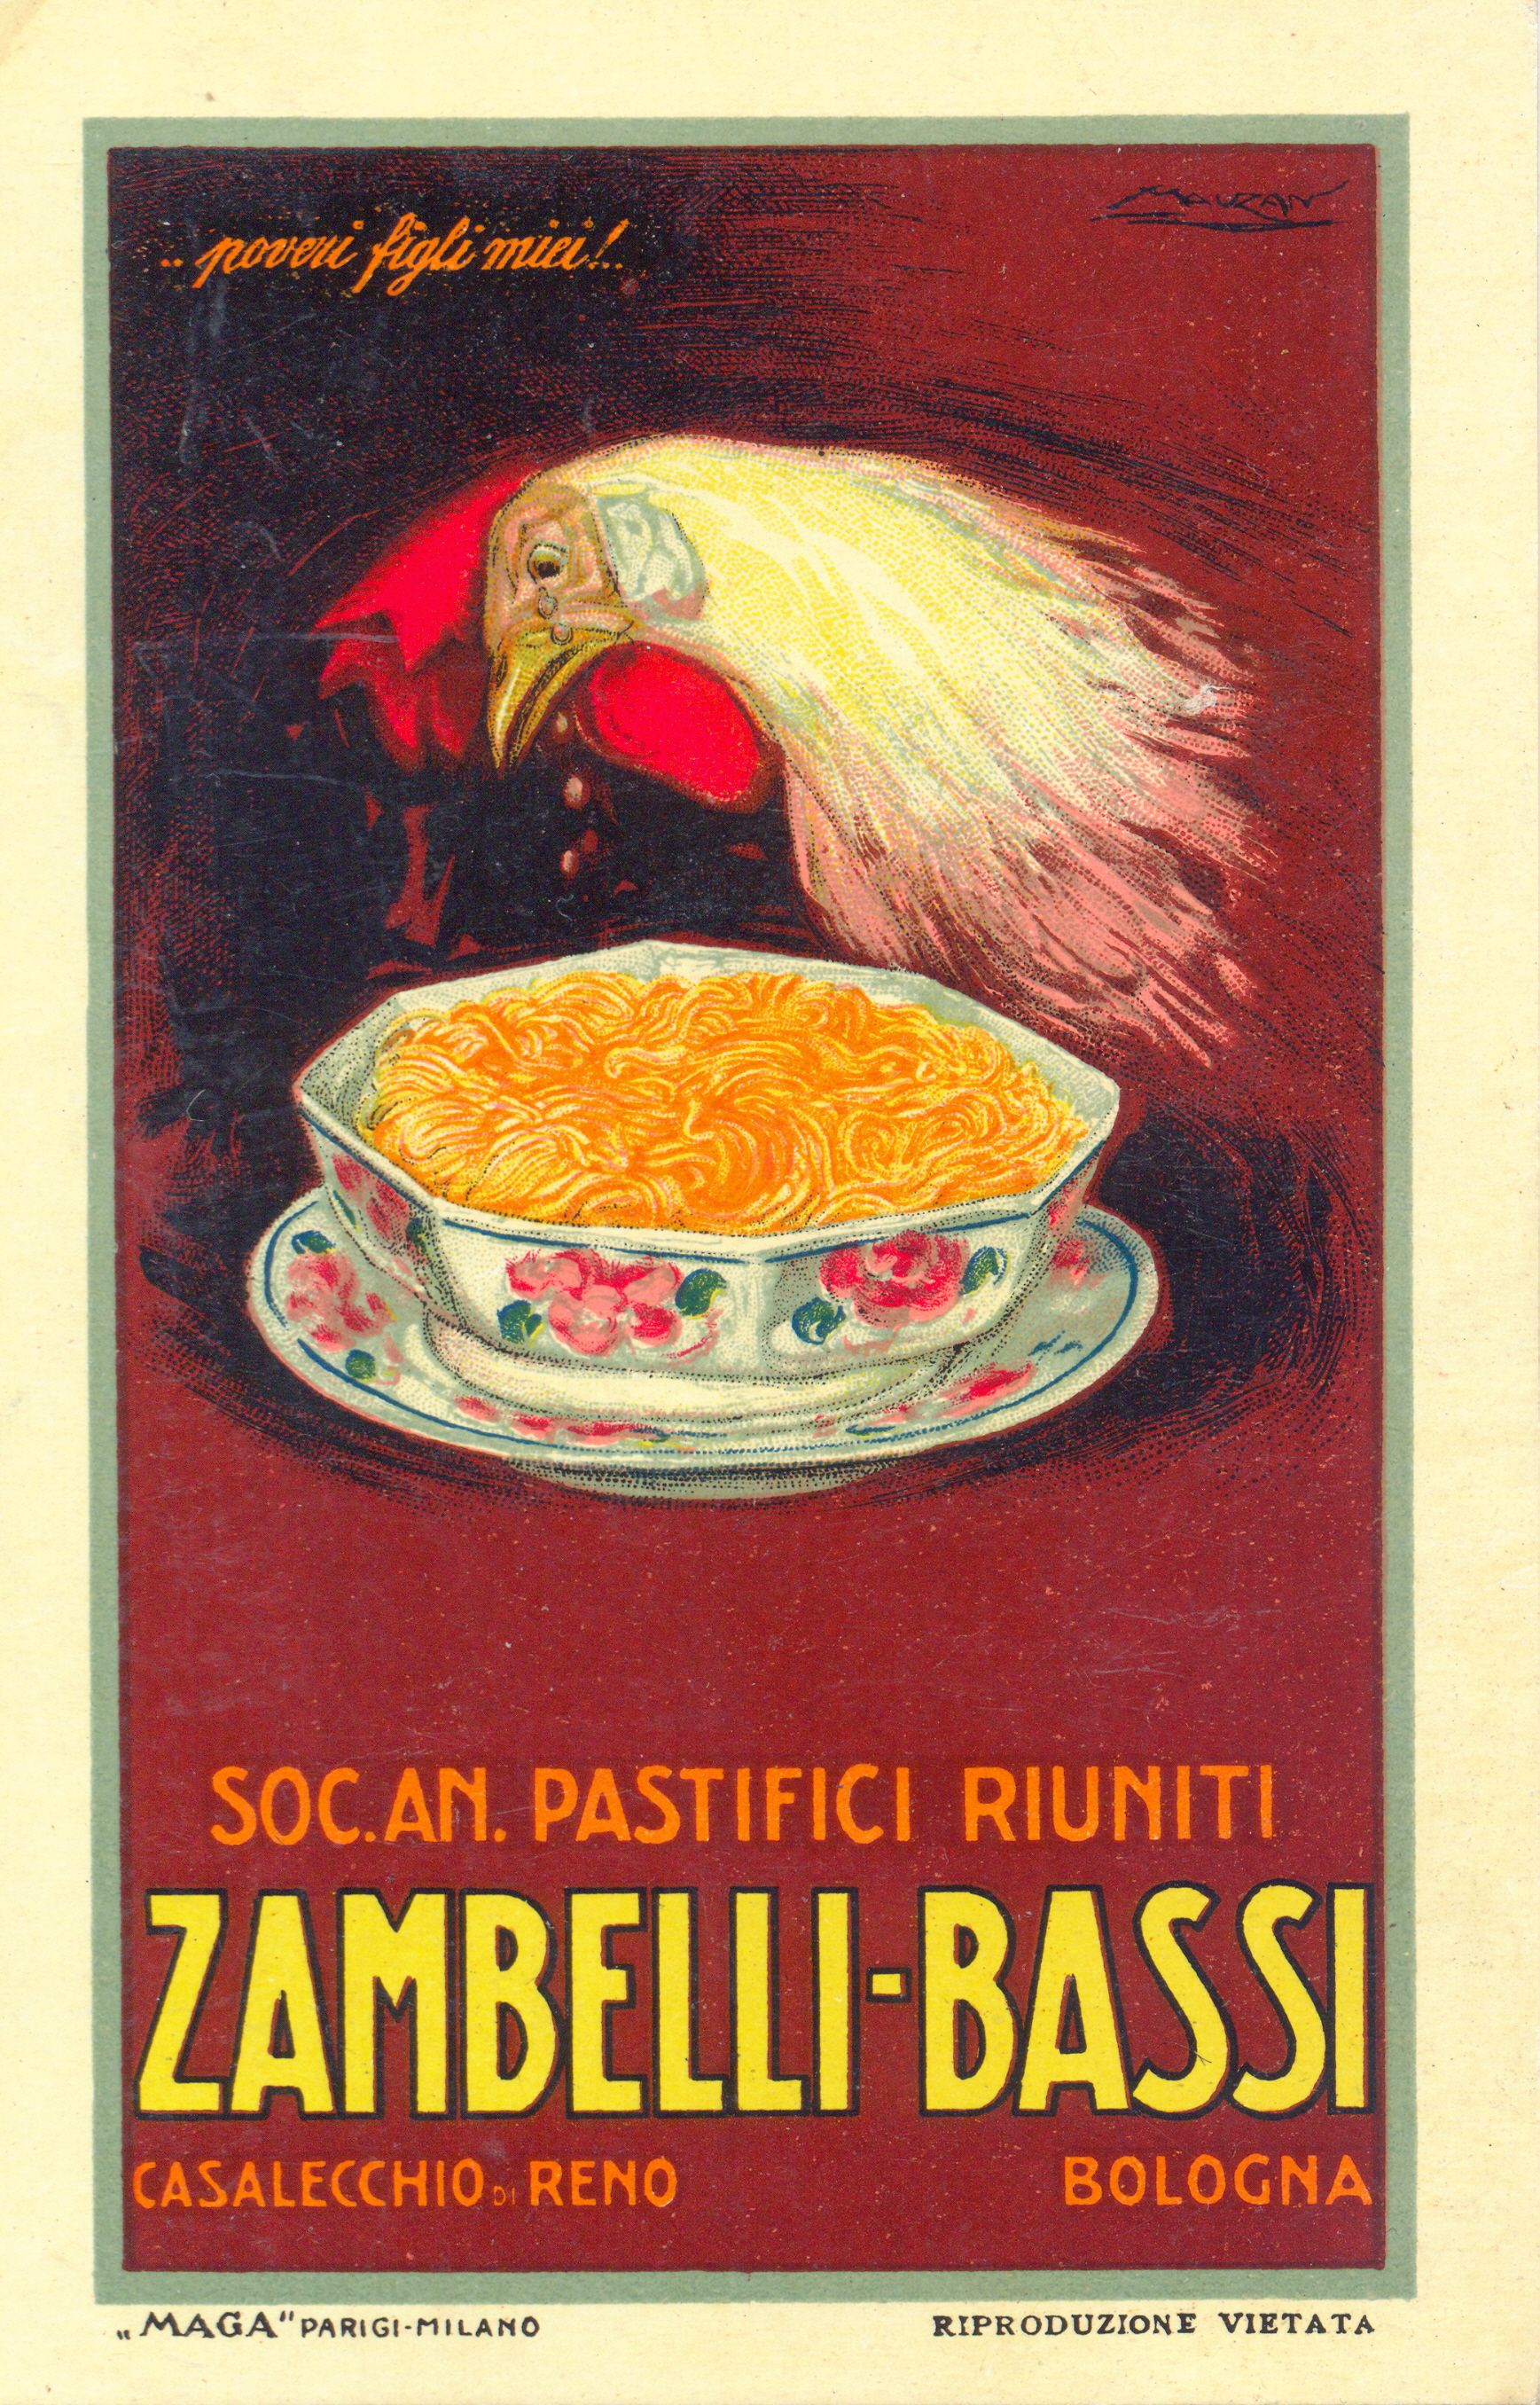 Cartolina pubblicitaria per la pasta all’uovo degli stabilimenti di produzione Zambelli   Bassi